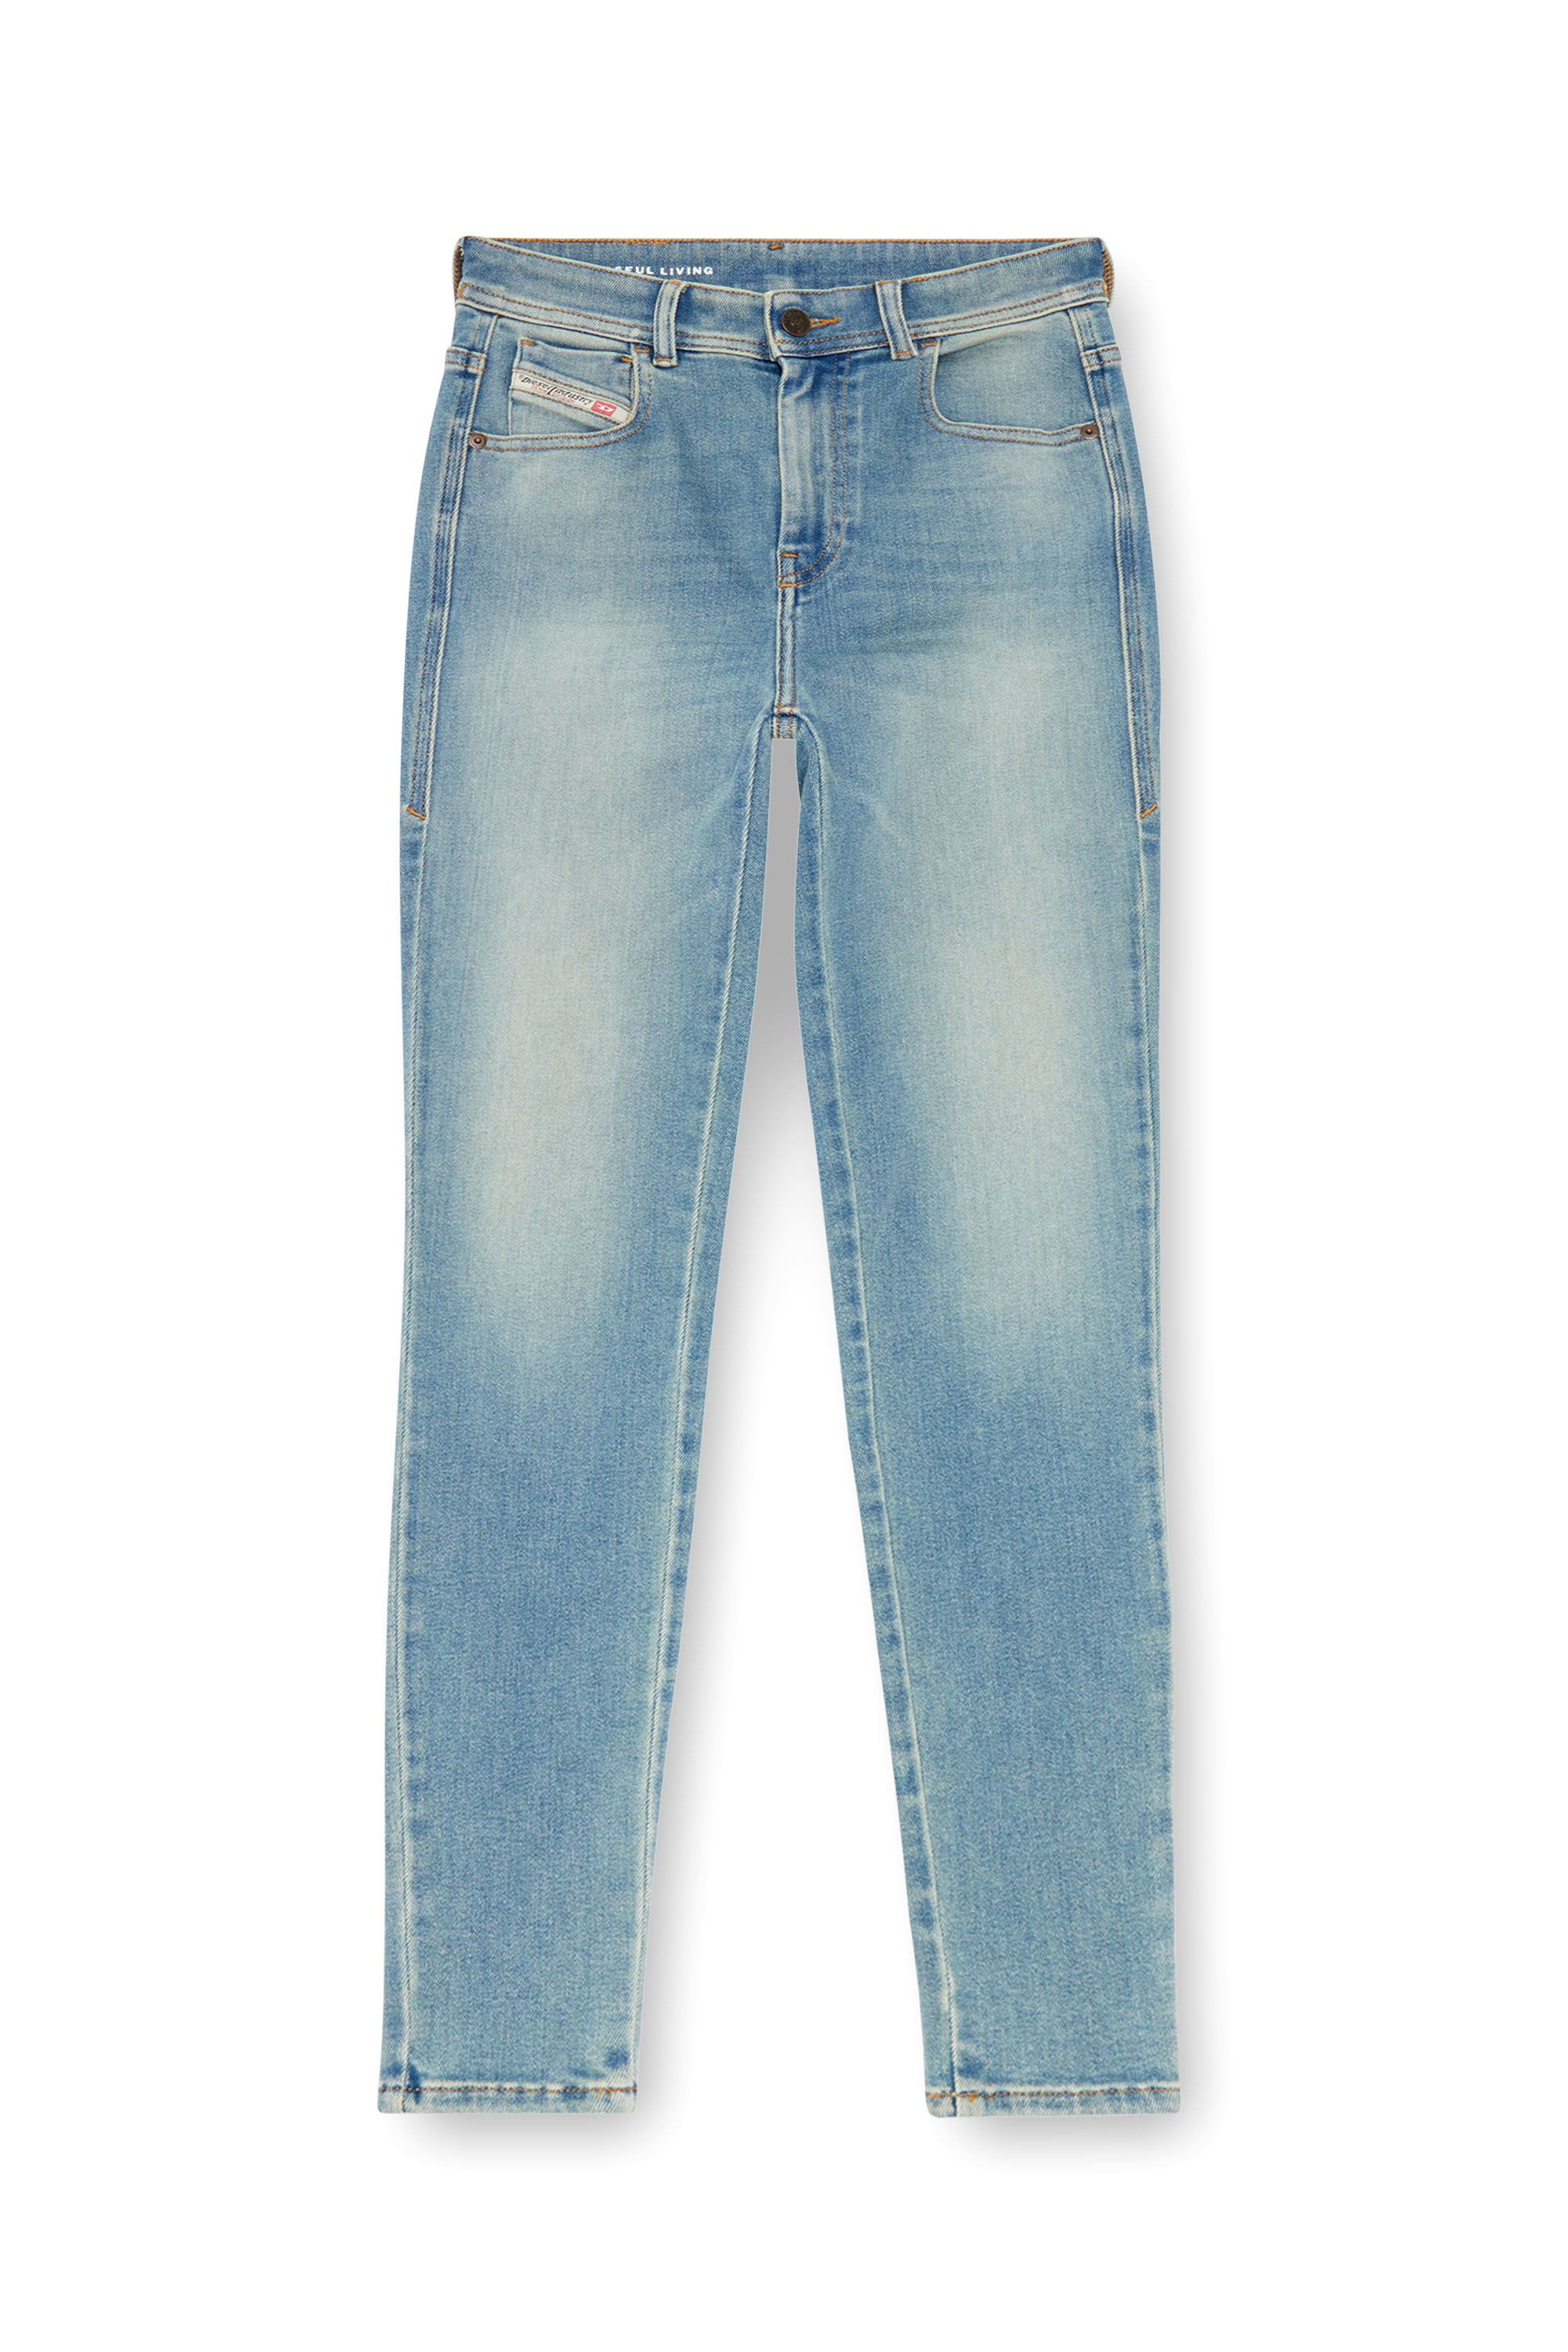 Diesel - Super skinny Jeans 1984 Slandy-High 09J09, Mujer Super skinny Jeans - 1984 Slandy-High in Azul marino - Image 5